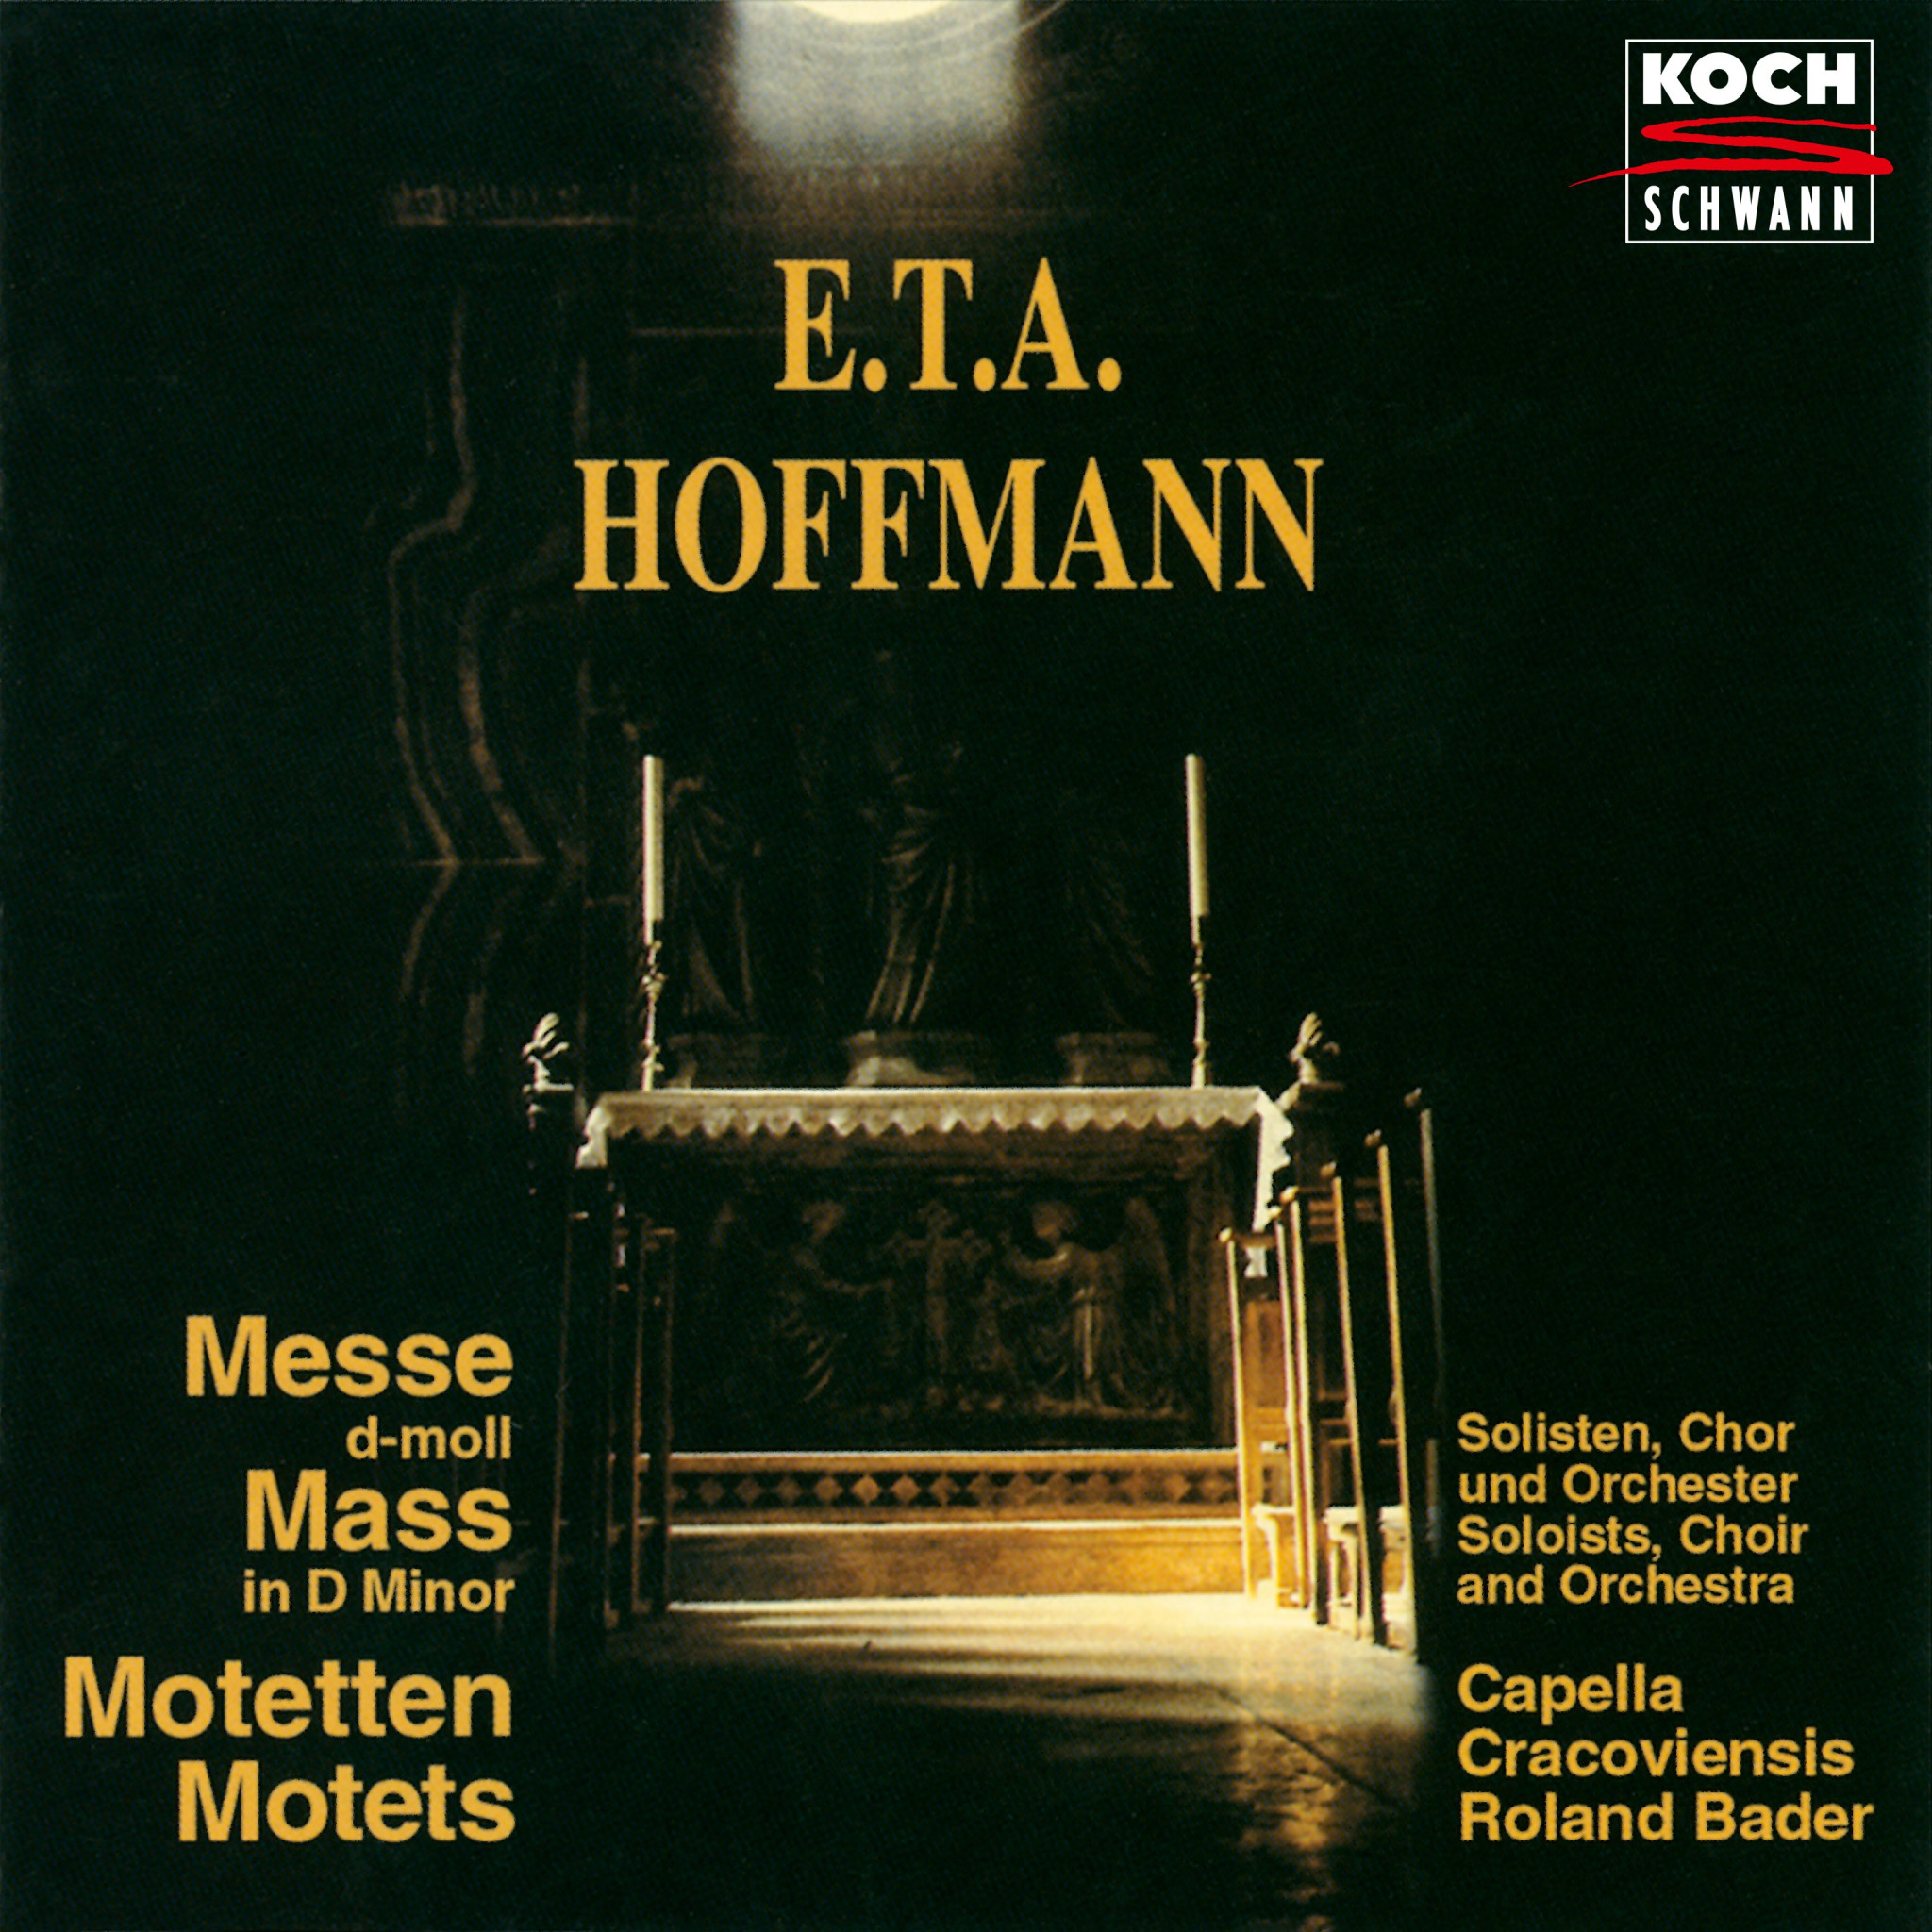 E.T.A. HOFFMANN